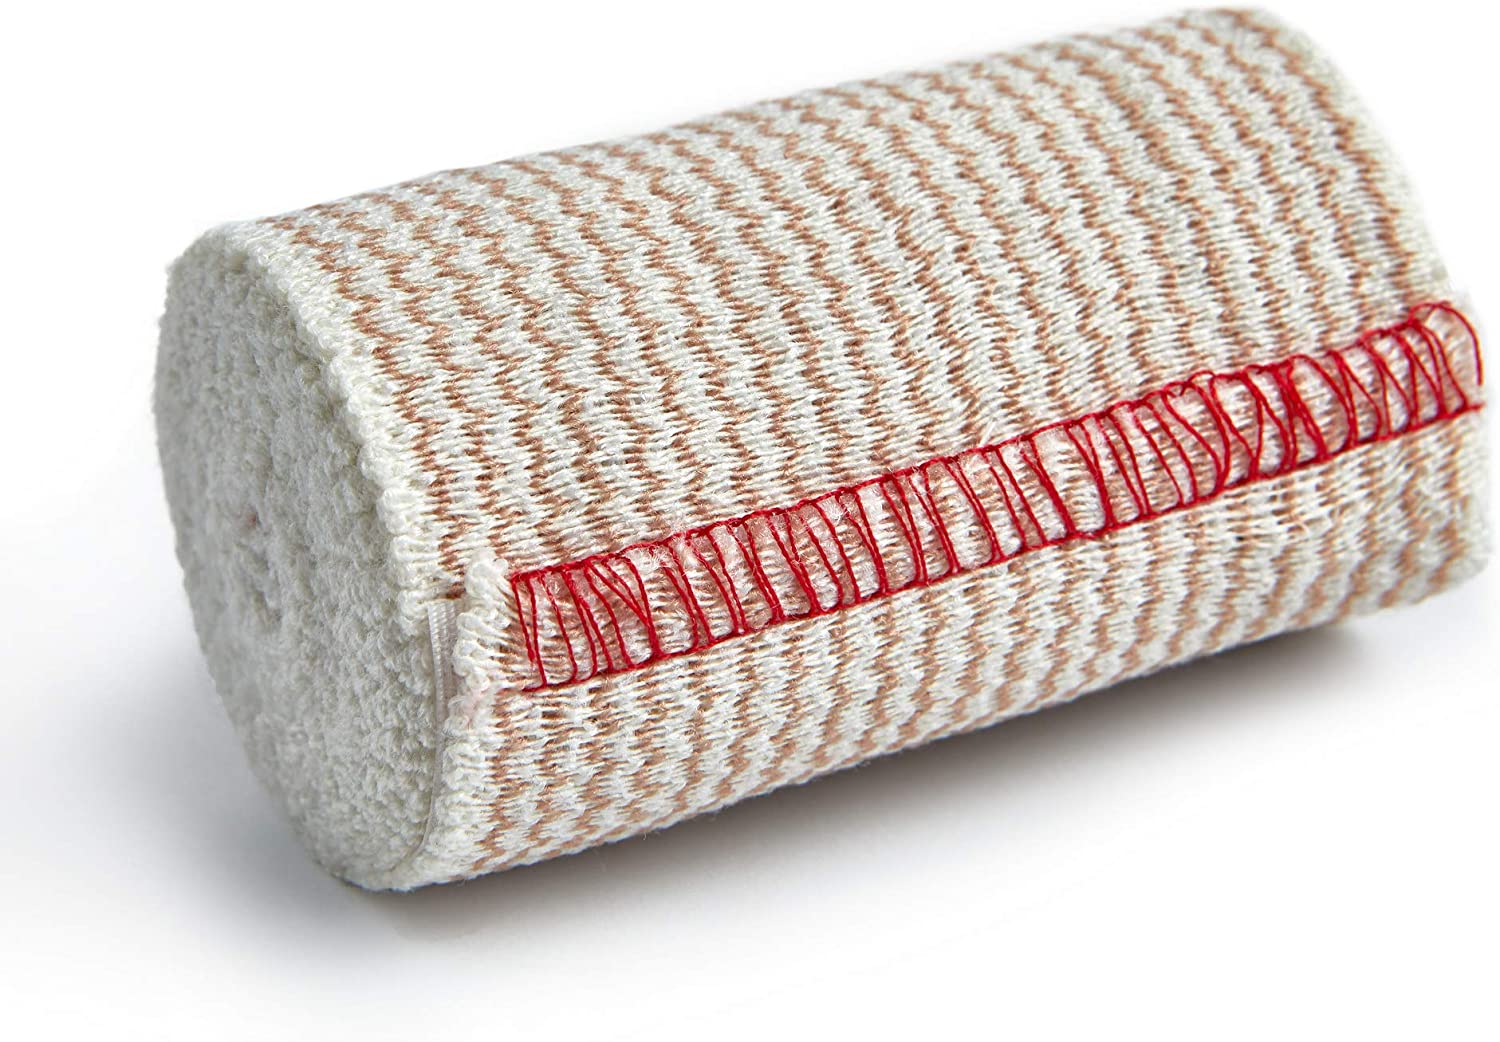 Premium Compression Reusable Cotton Elastic Sports Bandages